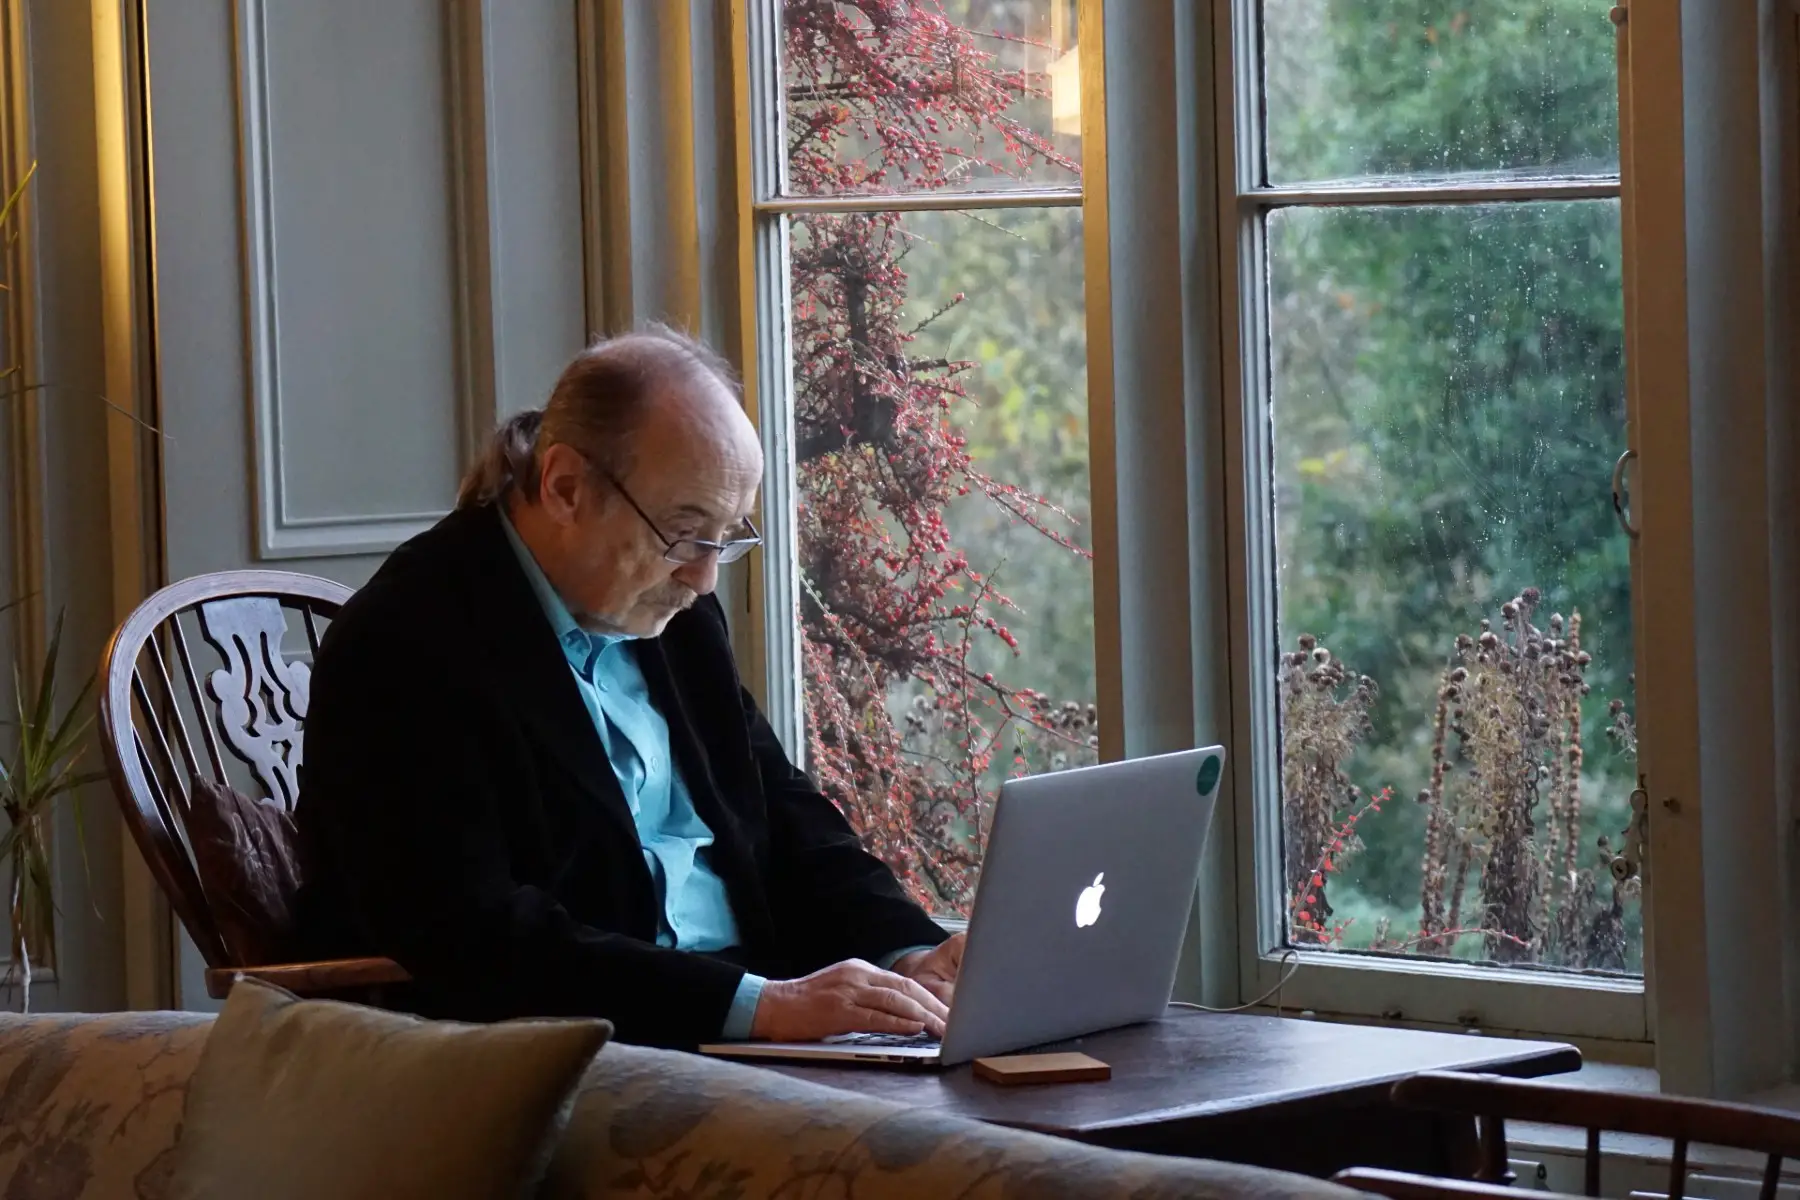 Philosopher George Pór looking at his laptop. Hawkwood College in Stroud, UK.